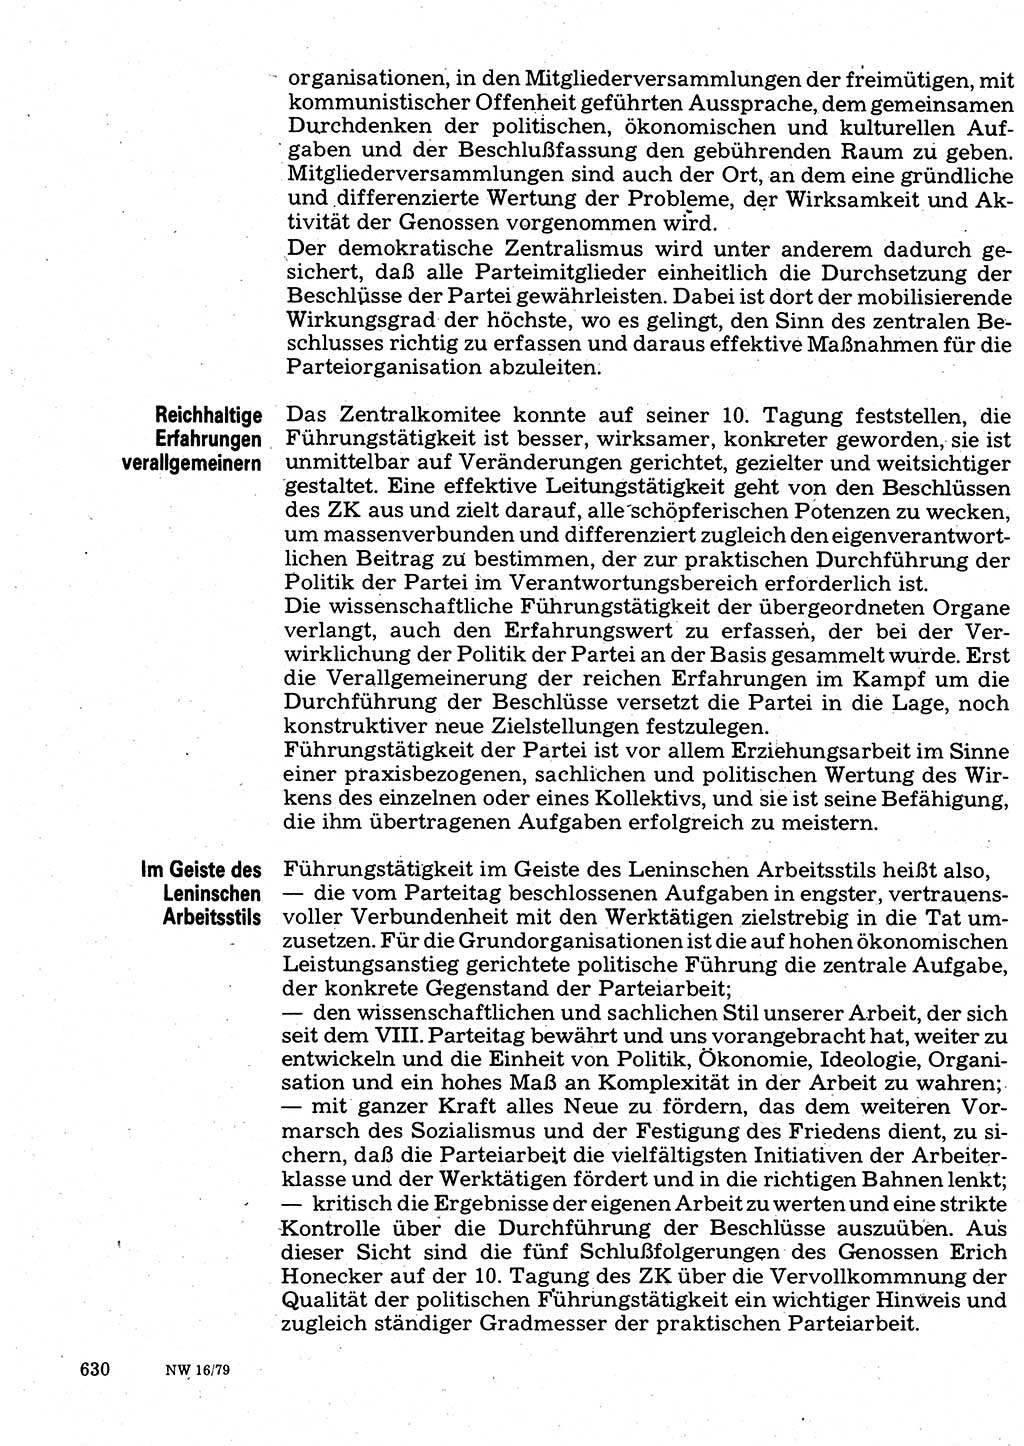 Neuer Weg (NW), Organ des Zentralkomitees (ZK) der SED (Sozialistische Einheitspartei Deutschlands) für Fragen des Parteilebens, 34. Jahrgang [Deutsche Demokratische Republik (DDR)] 1979, Seite 630 (NW ZK SED DDR 1979, S. 630)